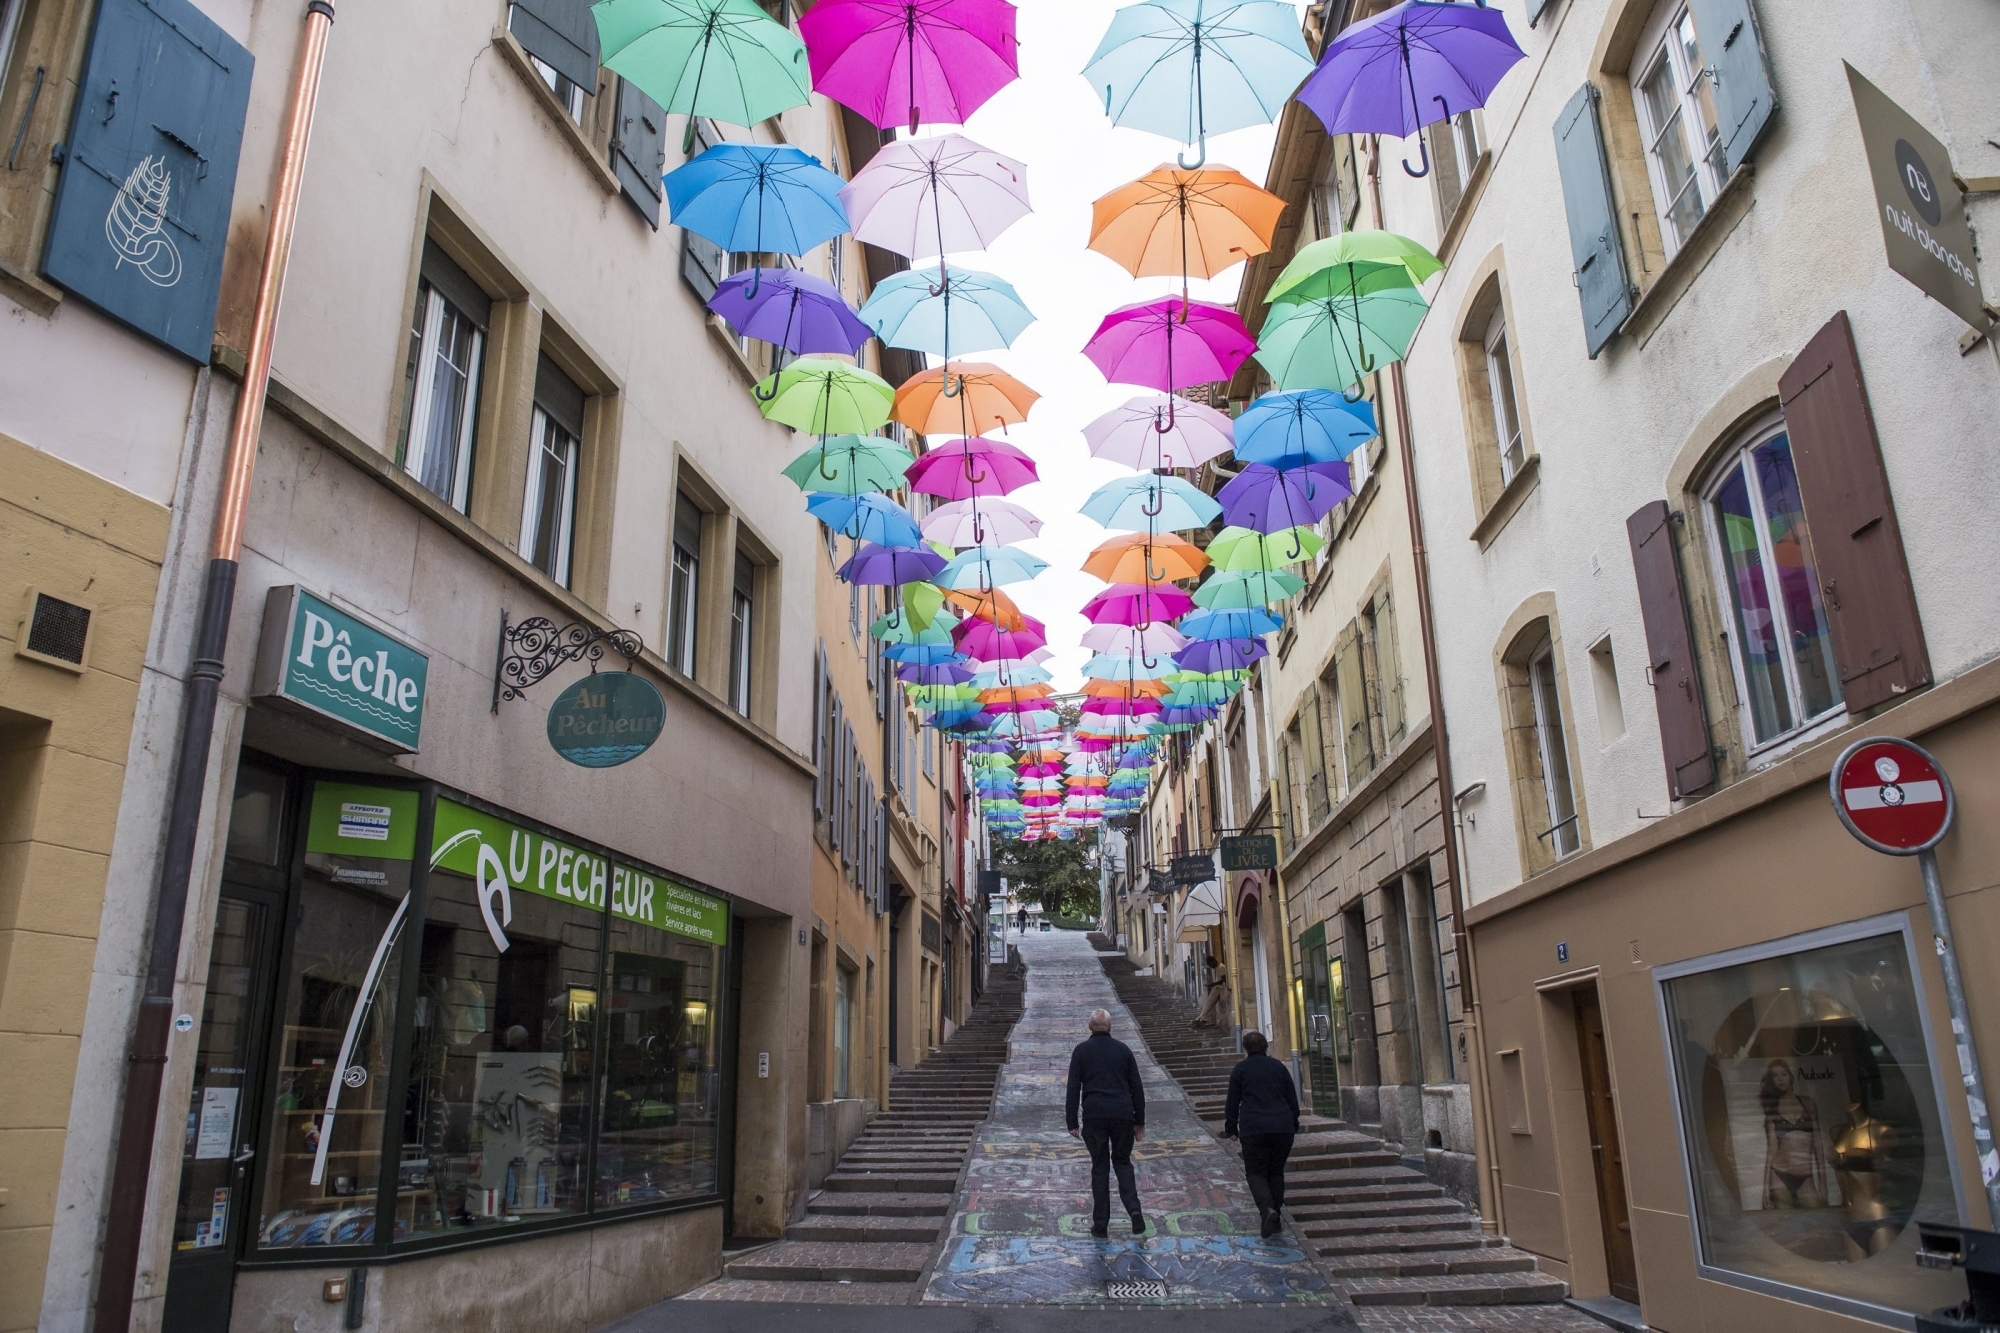 Les rues neuchâteloises prendront à nouveau des airs latins cet été. Il y a trois ans, les parapluies d'Olá Portugal (photo) avaient également ravi les passants.